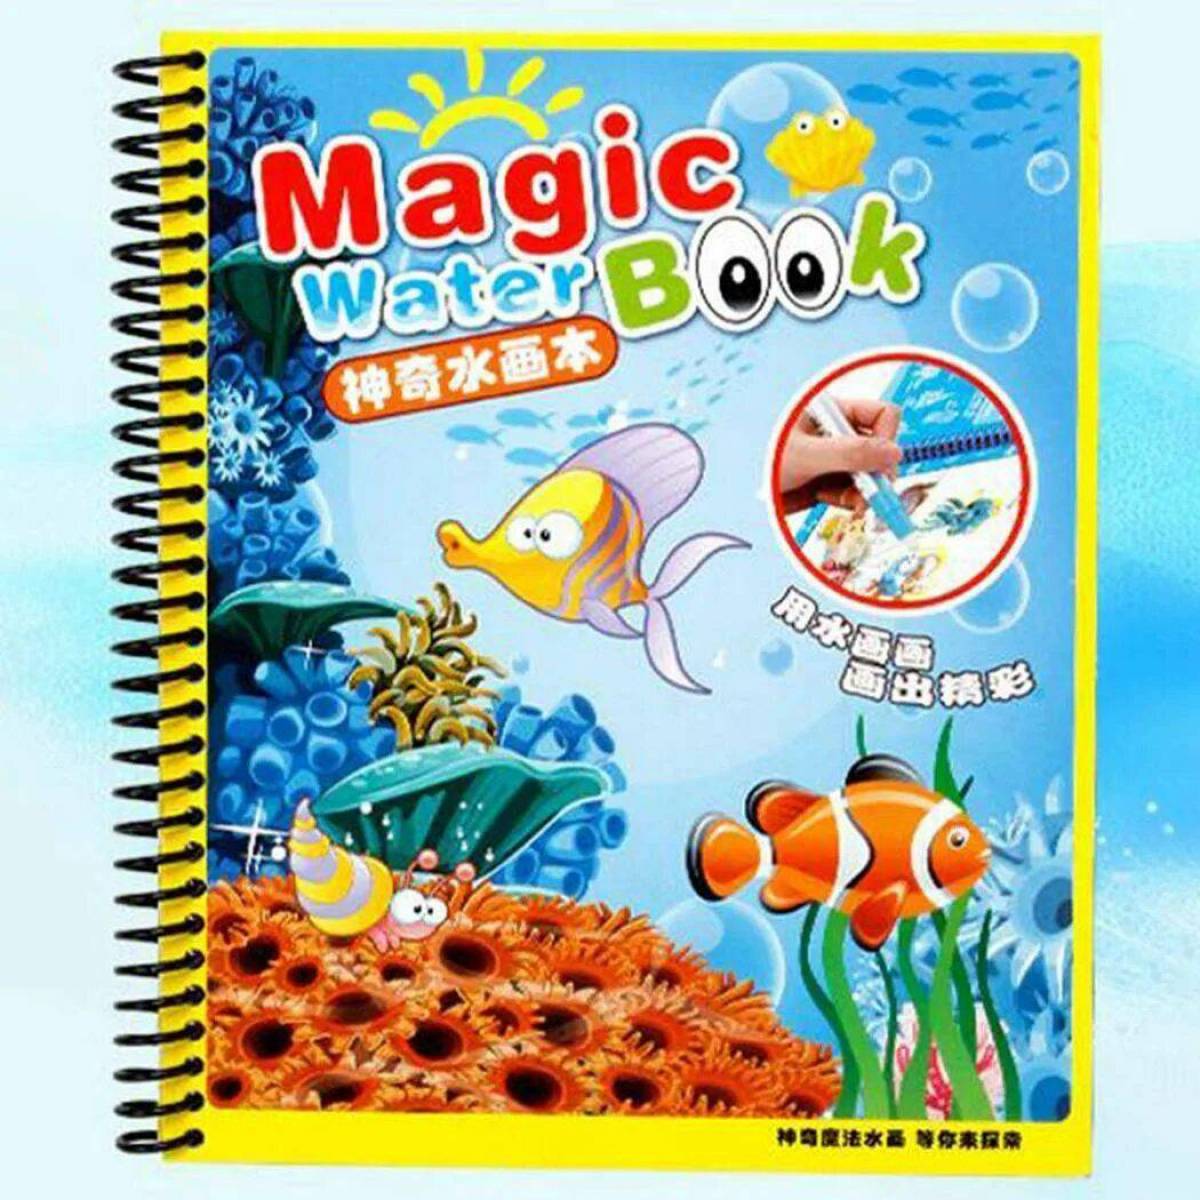 Magic water book #5